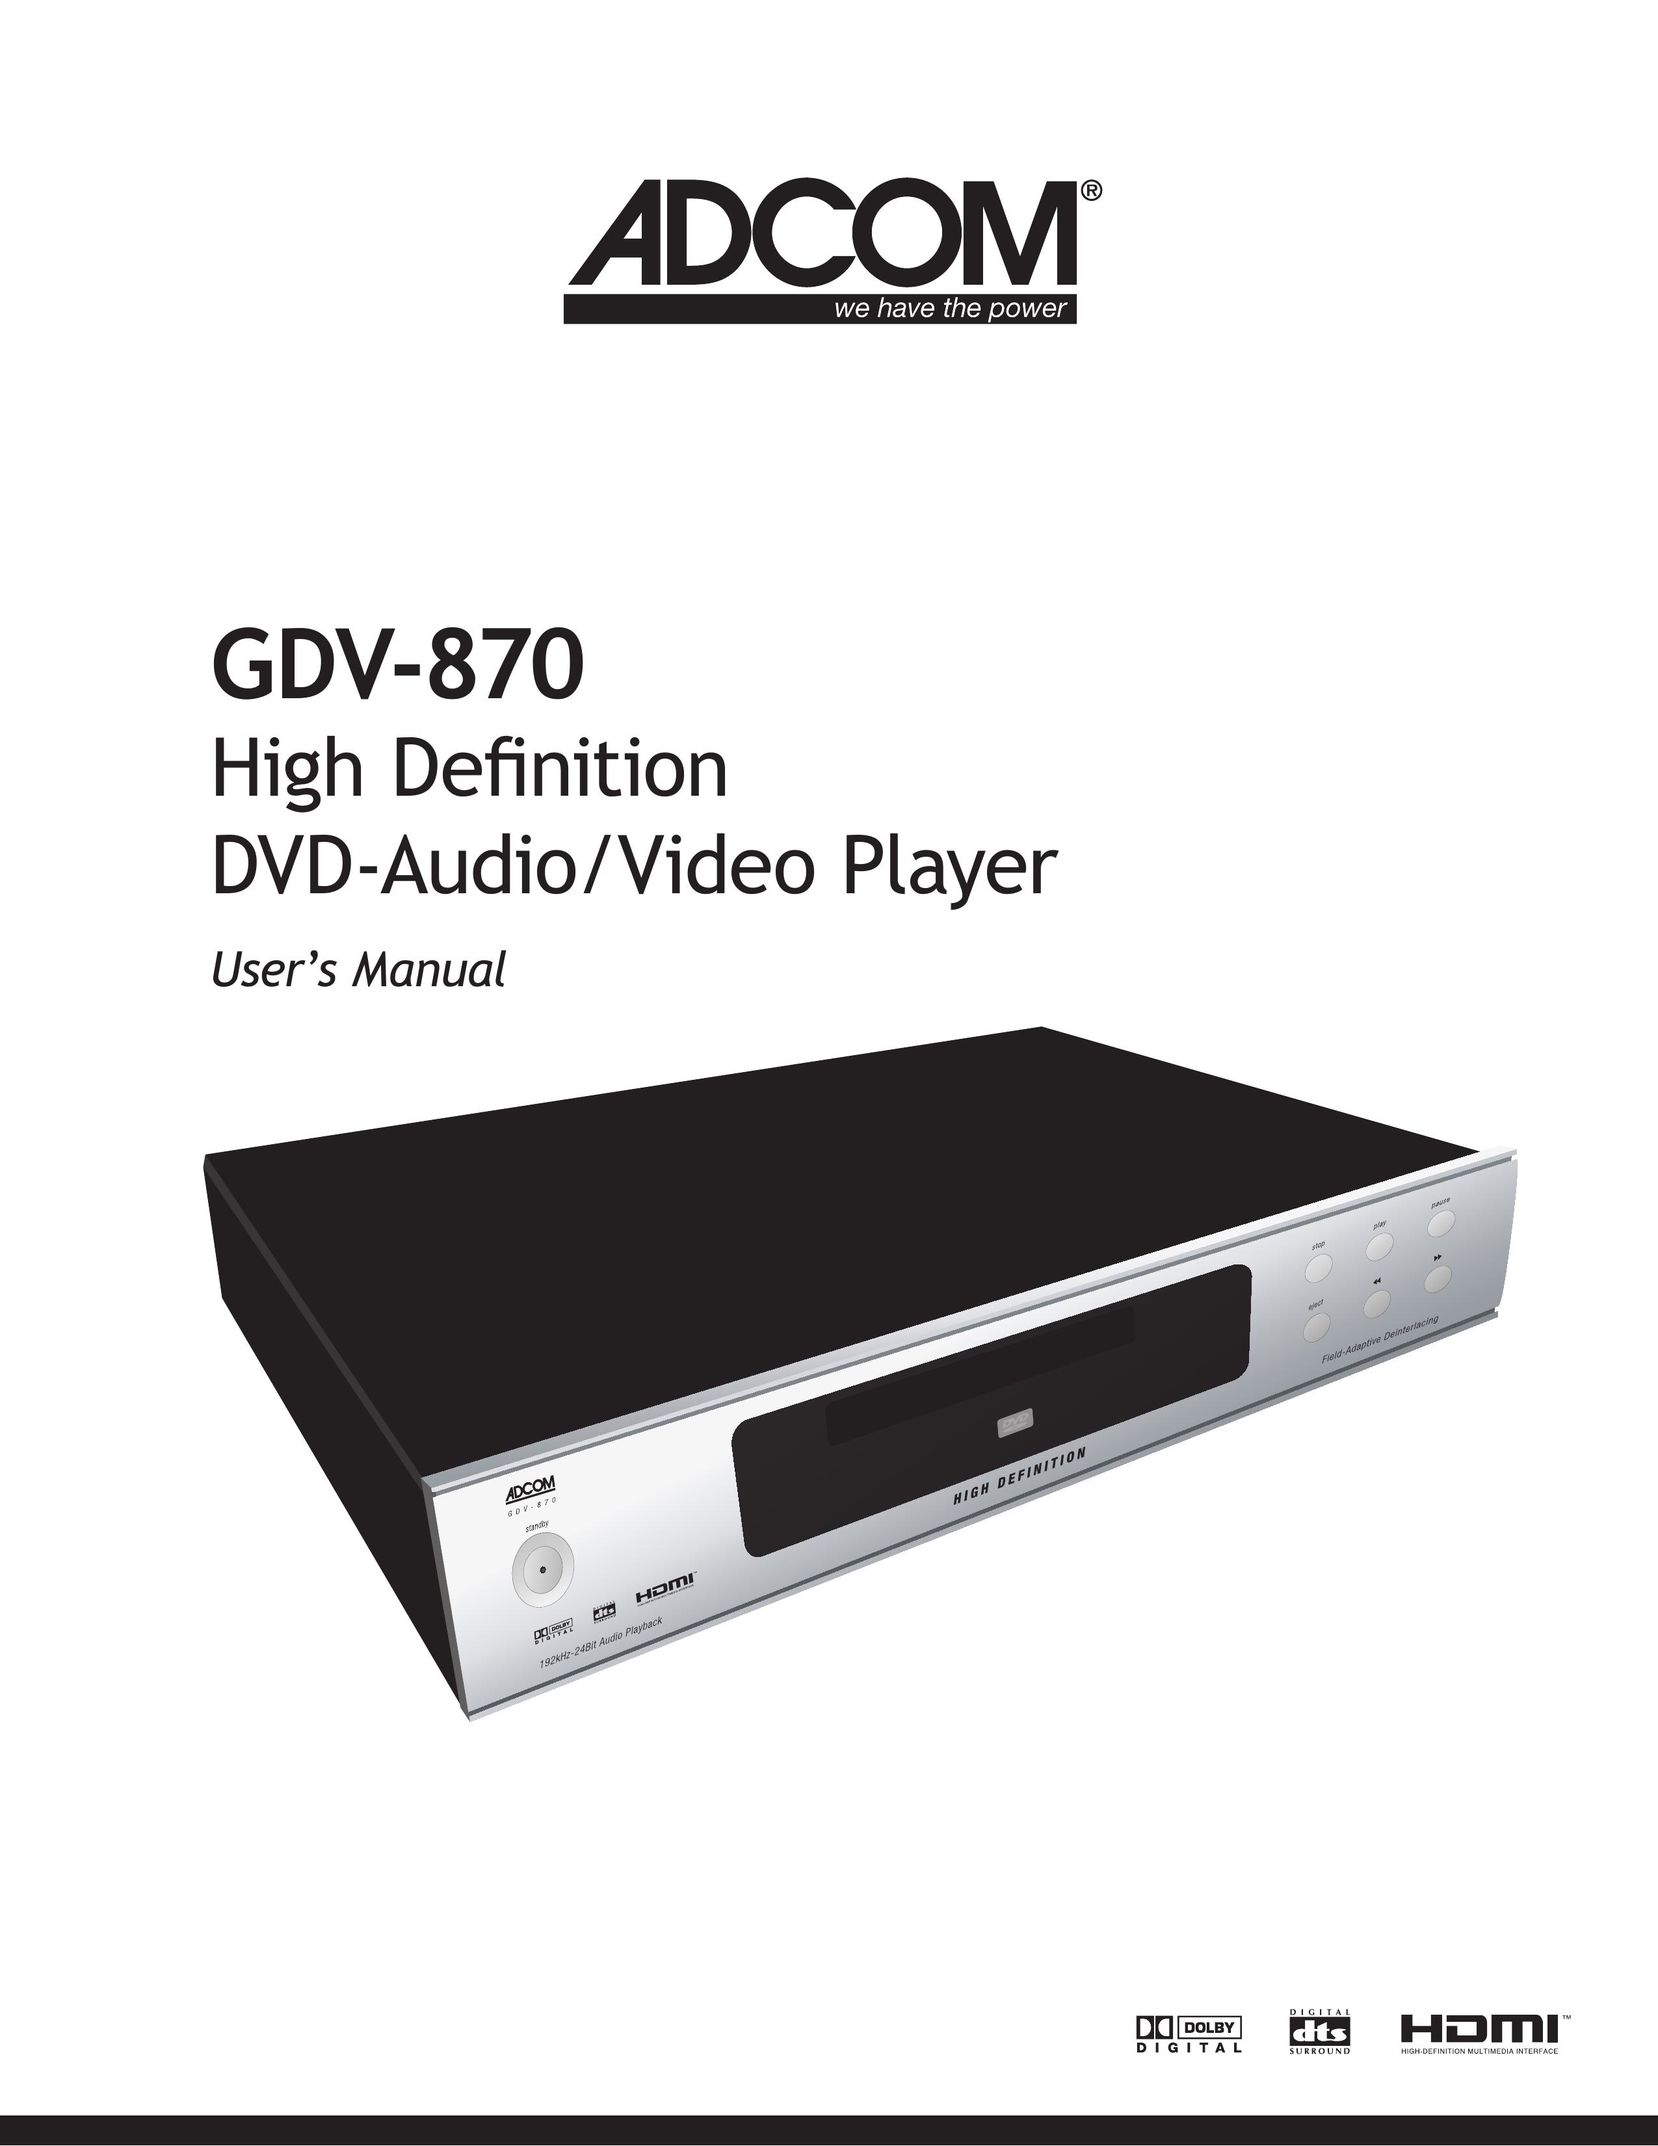 Adcom GDV-870 DVD Player User Manual